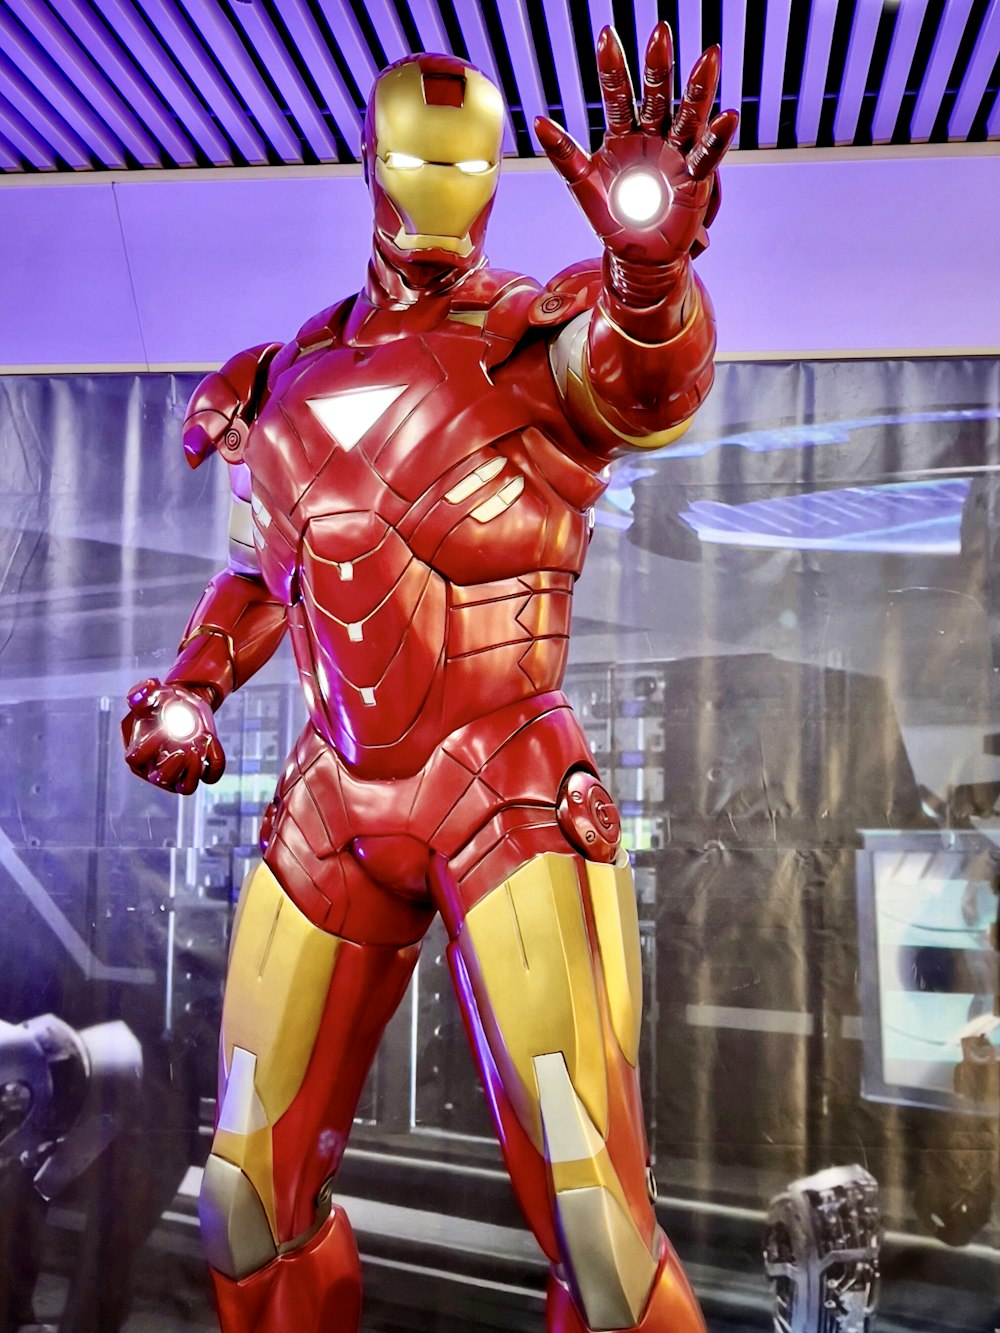 Una estatua de Iron Man se exhibe en un museo